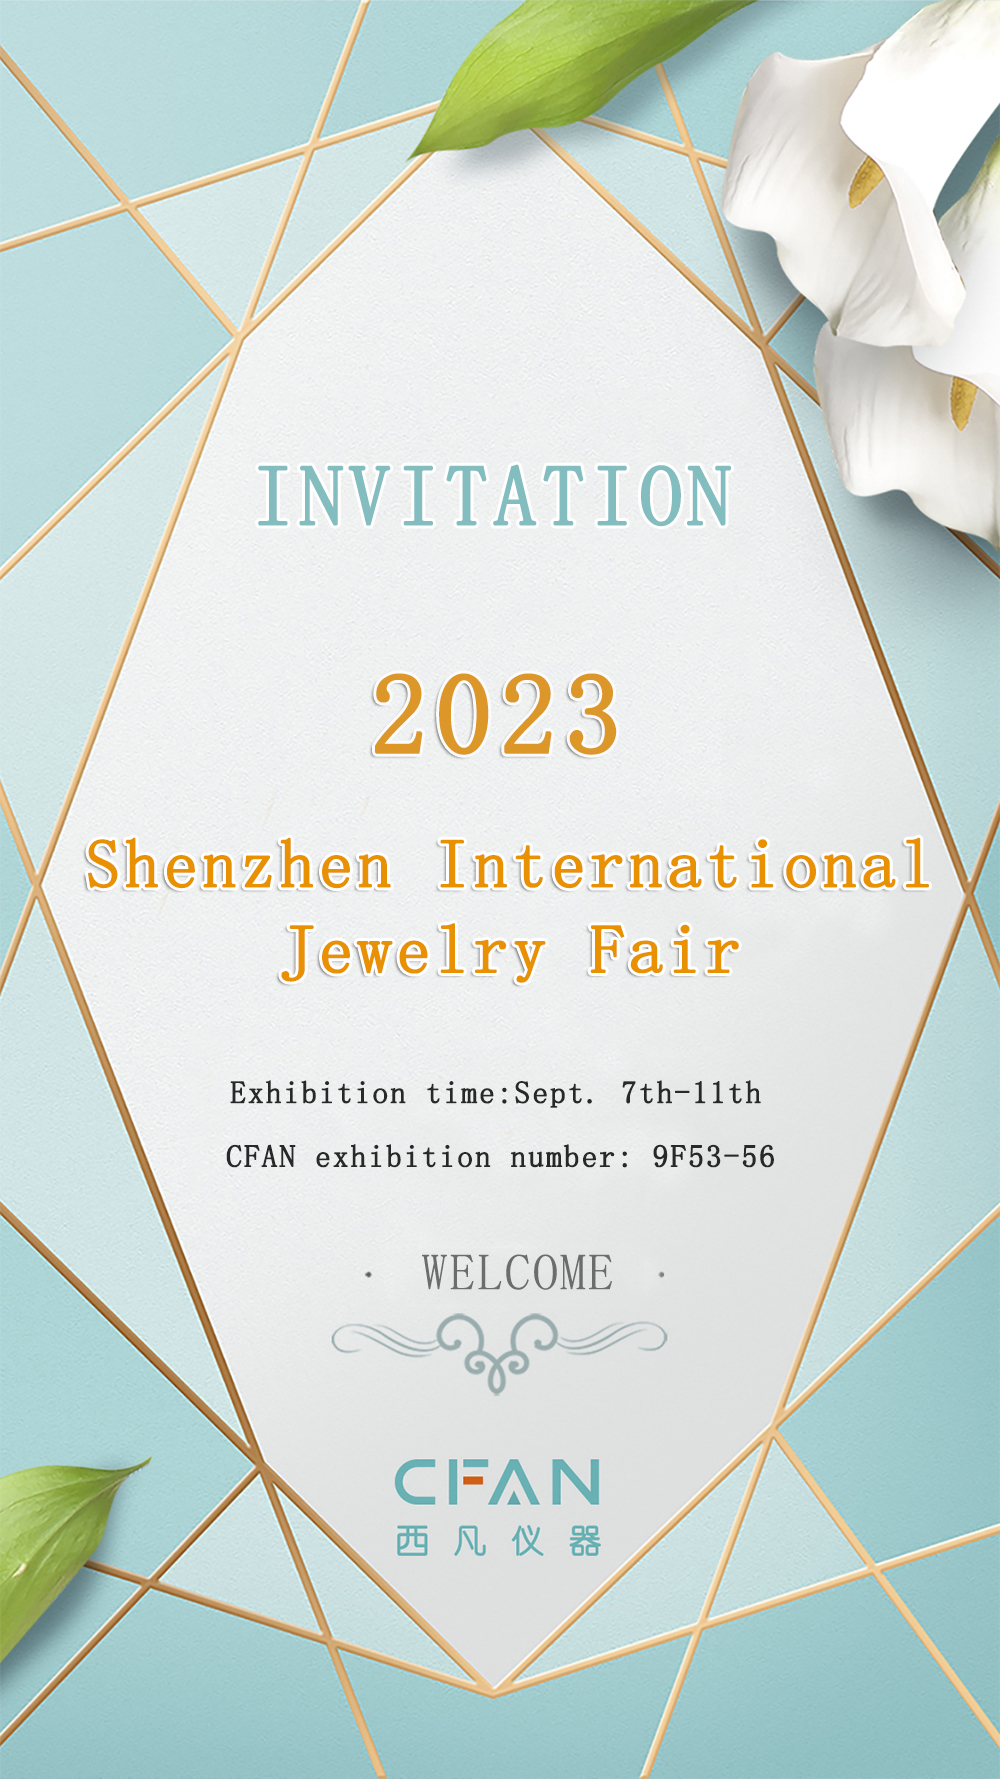 Shenzhen International Jewelry Fair